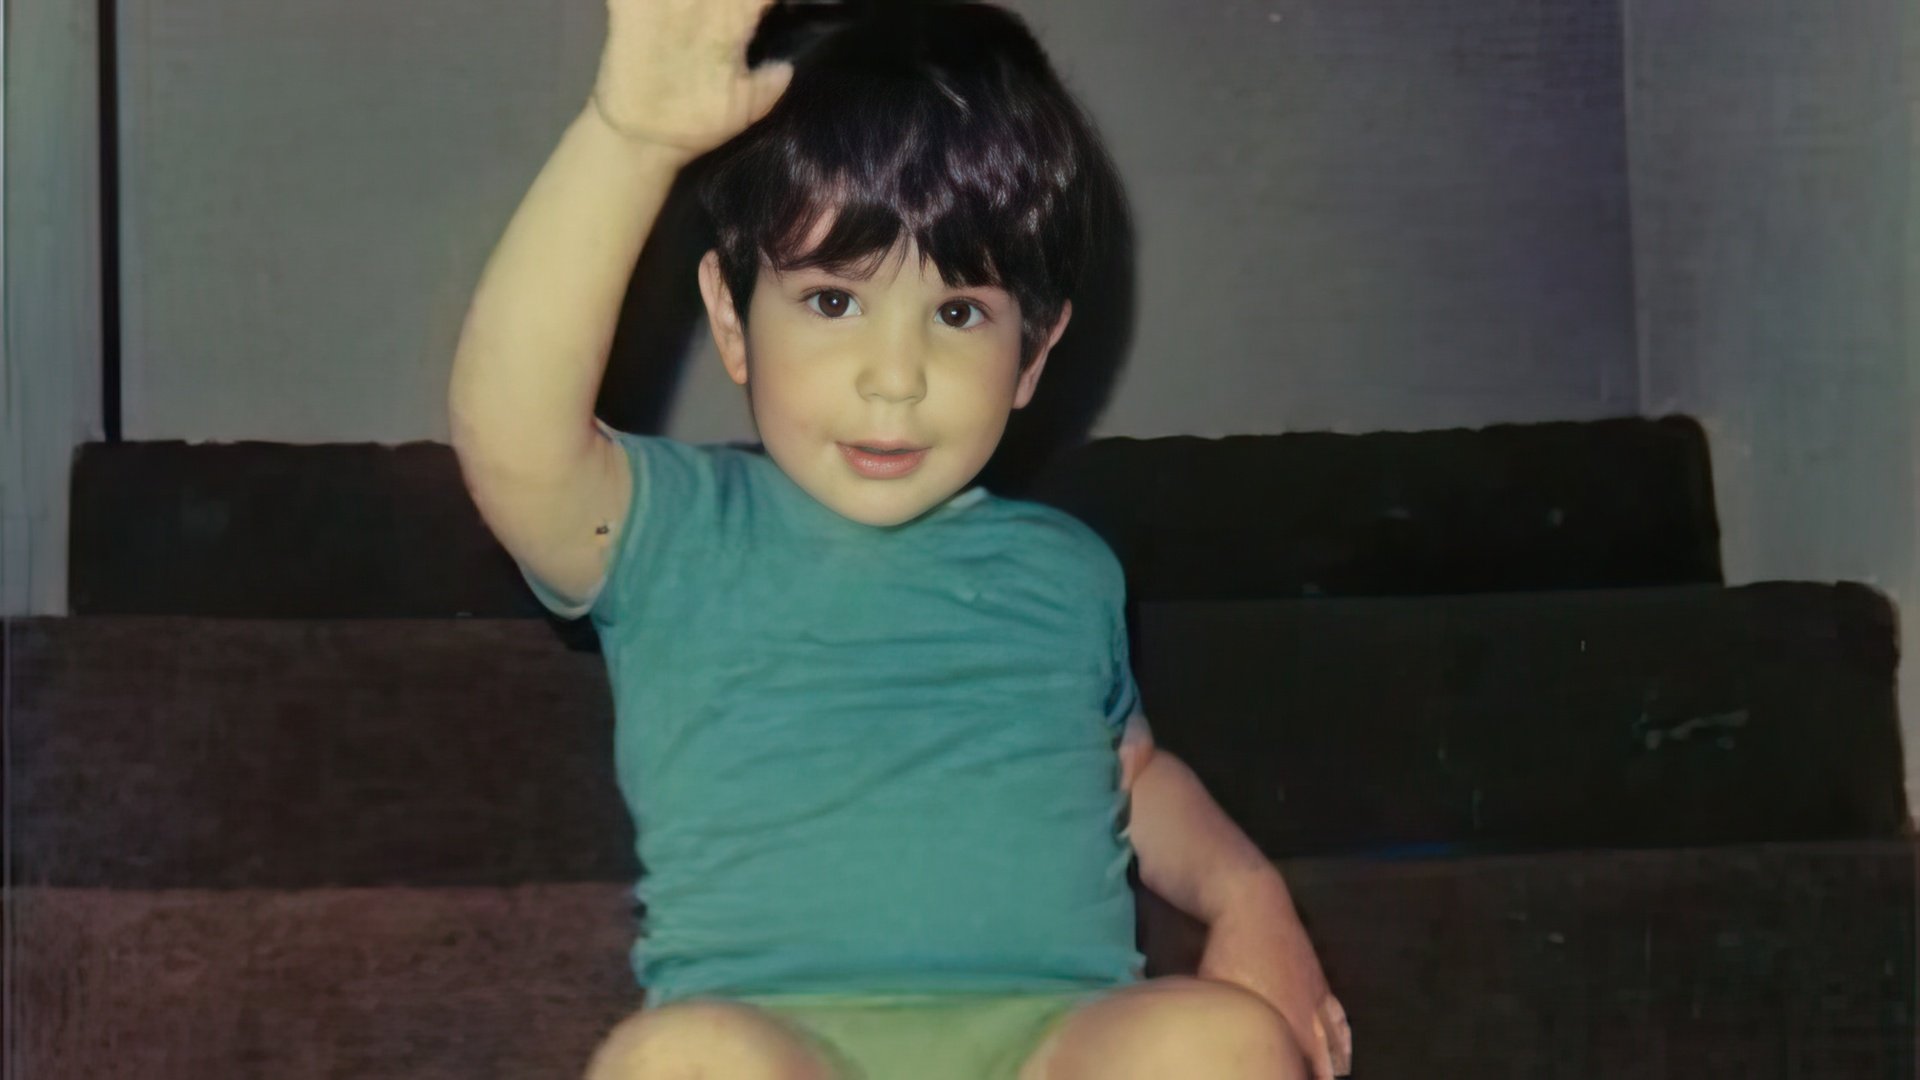 David Schwimmer as a child